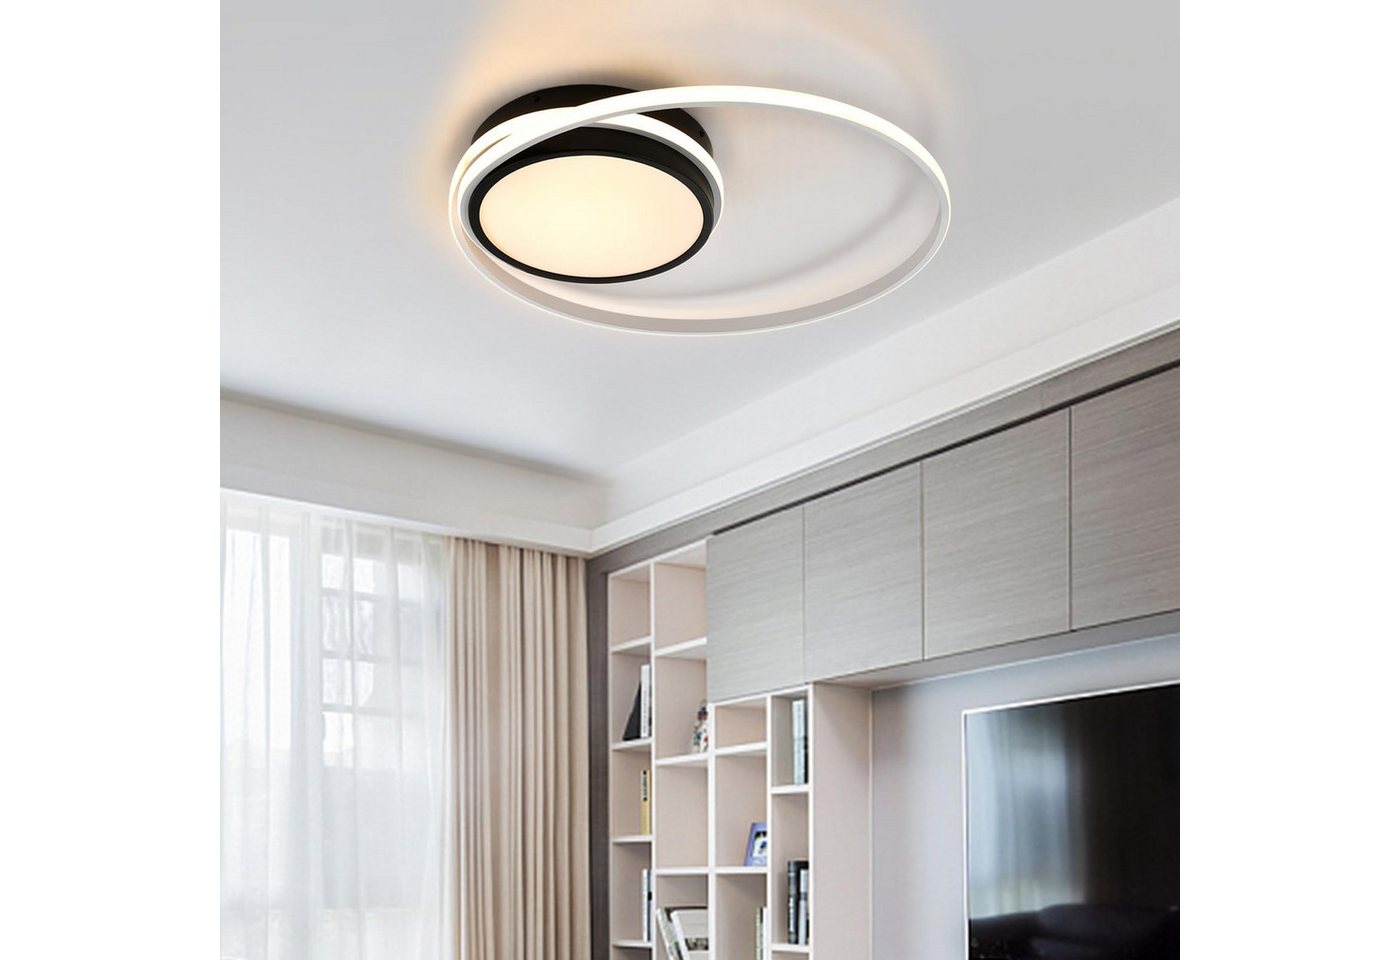 LQWELL LED Deckenleuchte Modern Schlafzimmerlampe Deckenlampe, 34.5W, Warmweiß 3000K, 590 * 90mm, Küchenlampe aus Aluminium, für Wohnzimmer Schlafzimmer Küche Balkon Flur Keller Büro von LQWELL